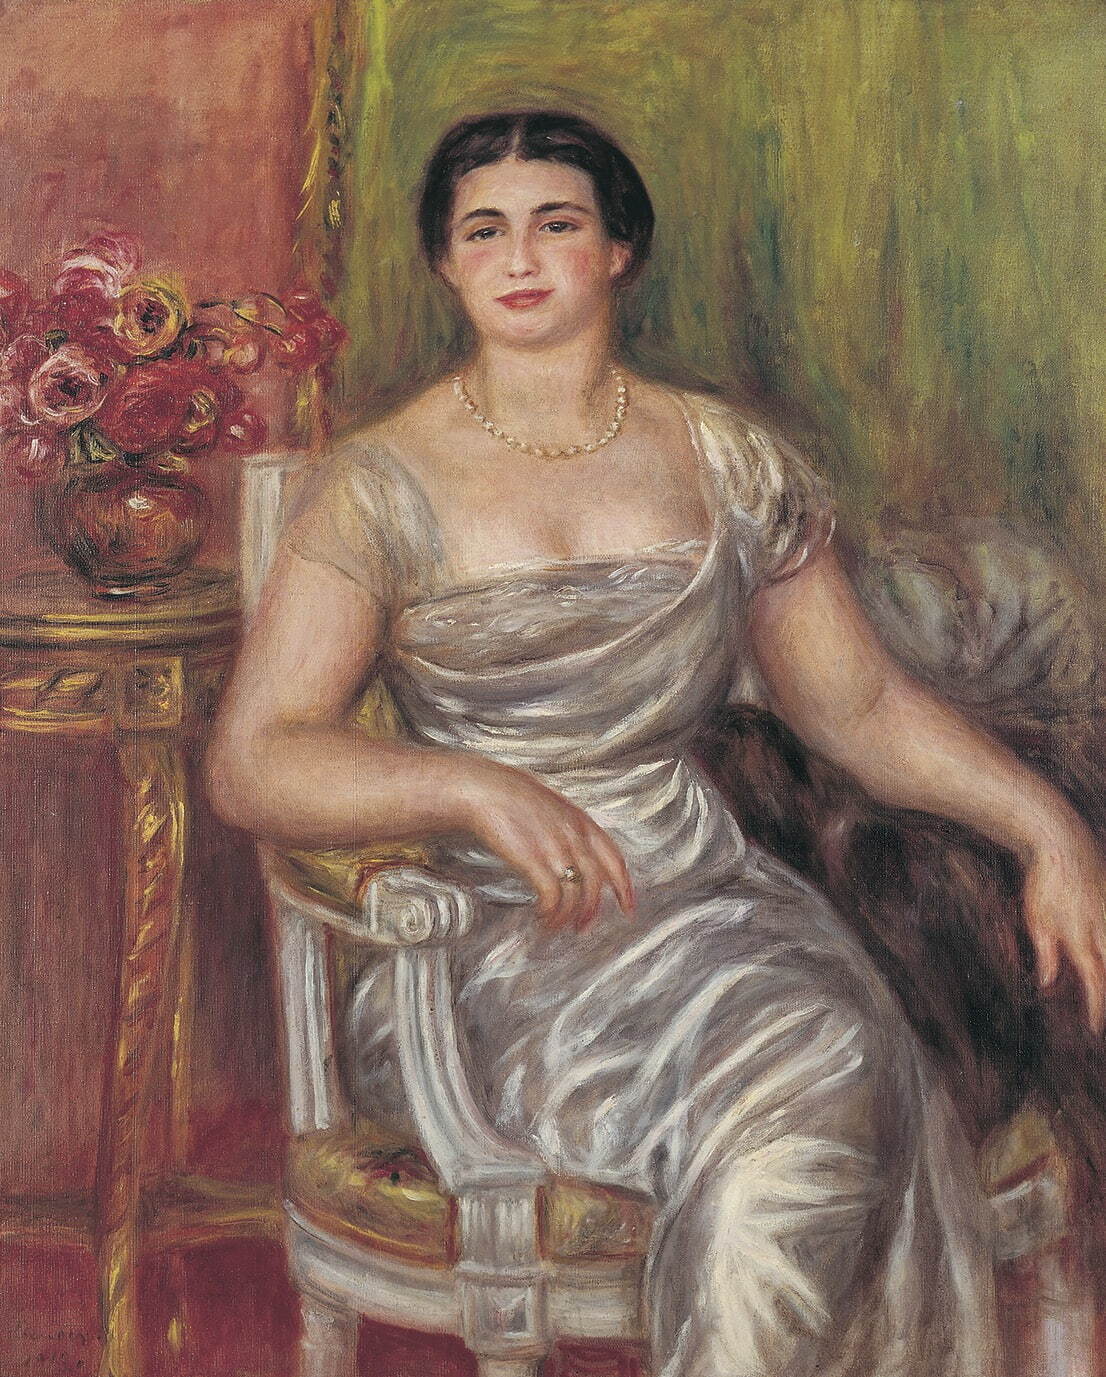 オーギュスト・ルノワール《詩人アリス・ヴァリエール゠メルツバッハの肖像》1913年
ASSOCIATION DES AMIS DU PETIT PALAIS, GENEVE